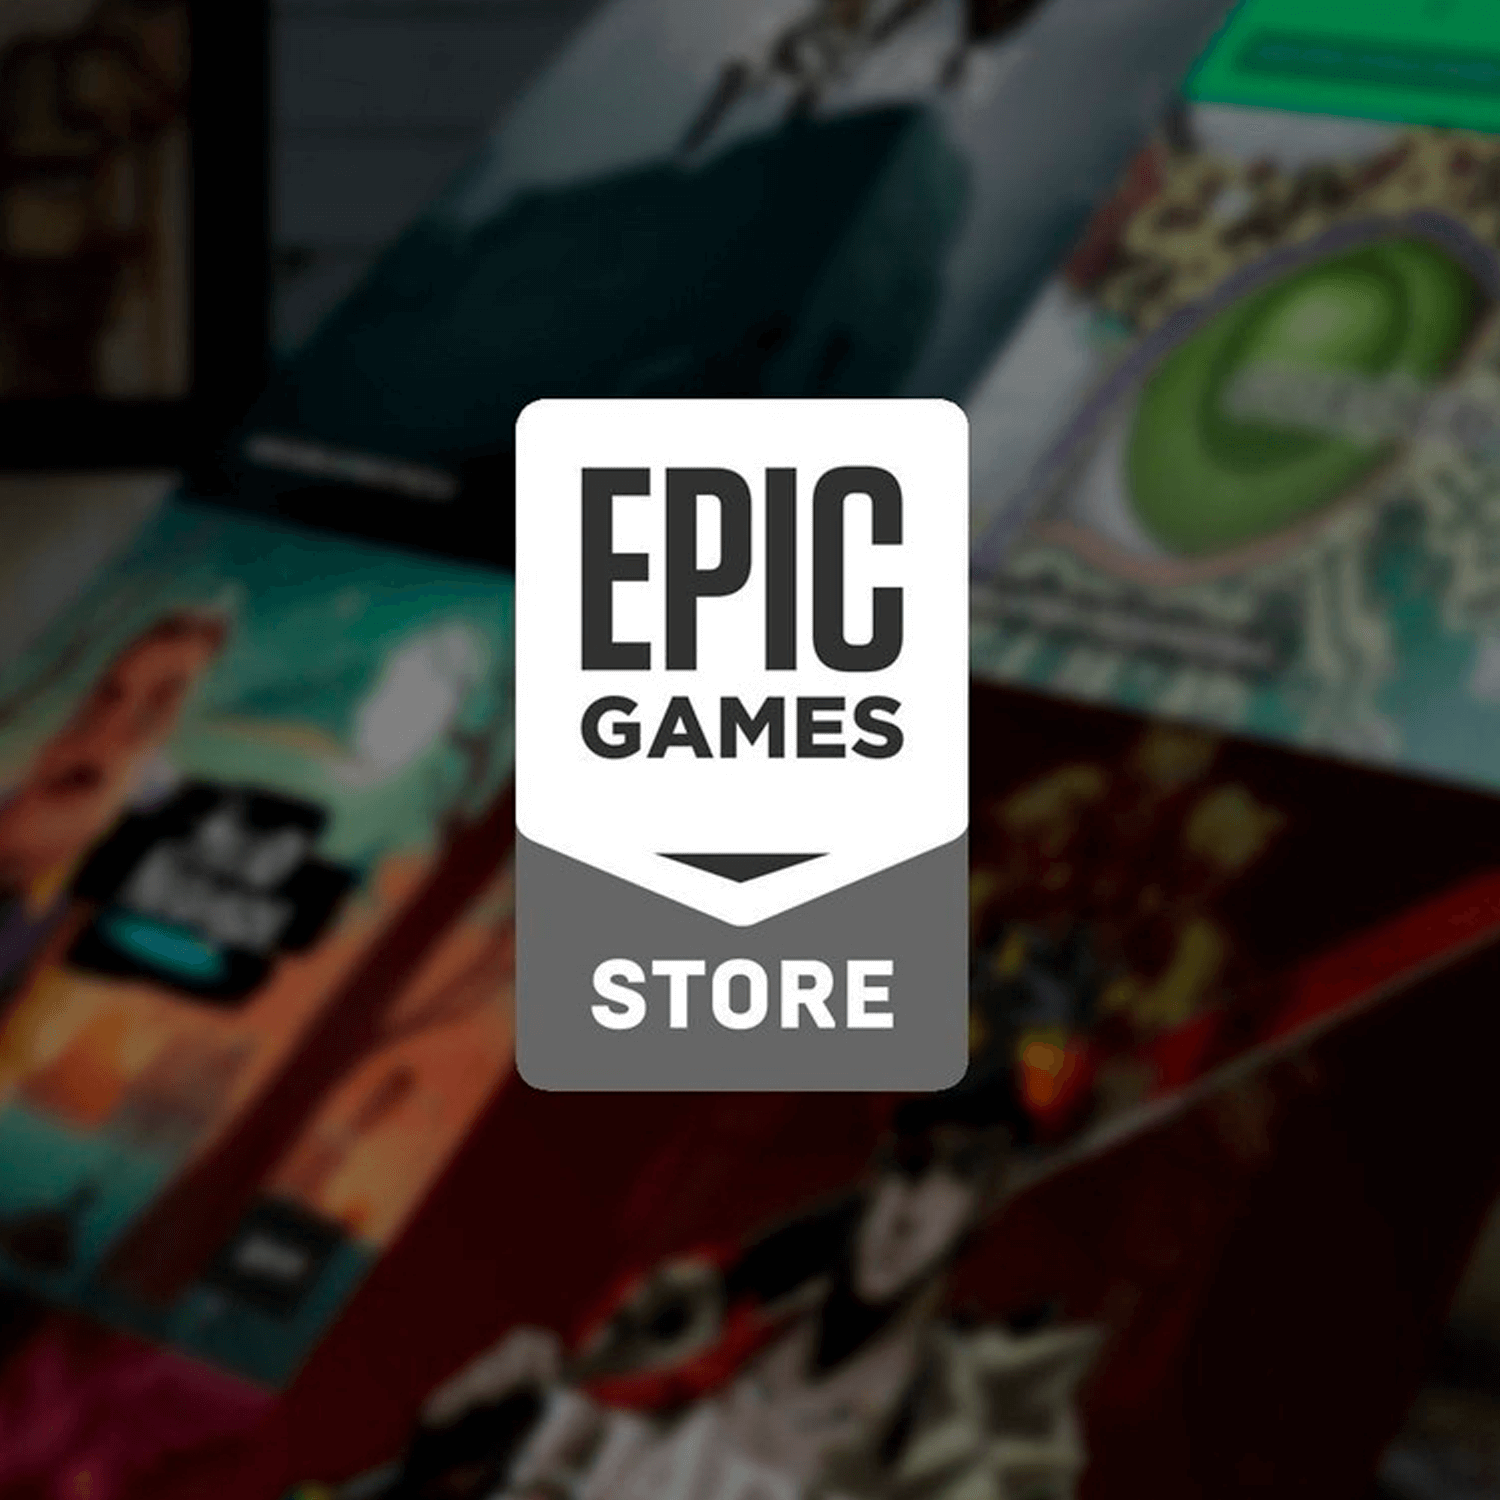 ¡Conoce los dos juegos gratis disponibles en la Epic Store!